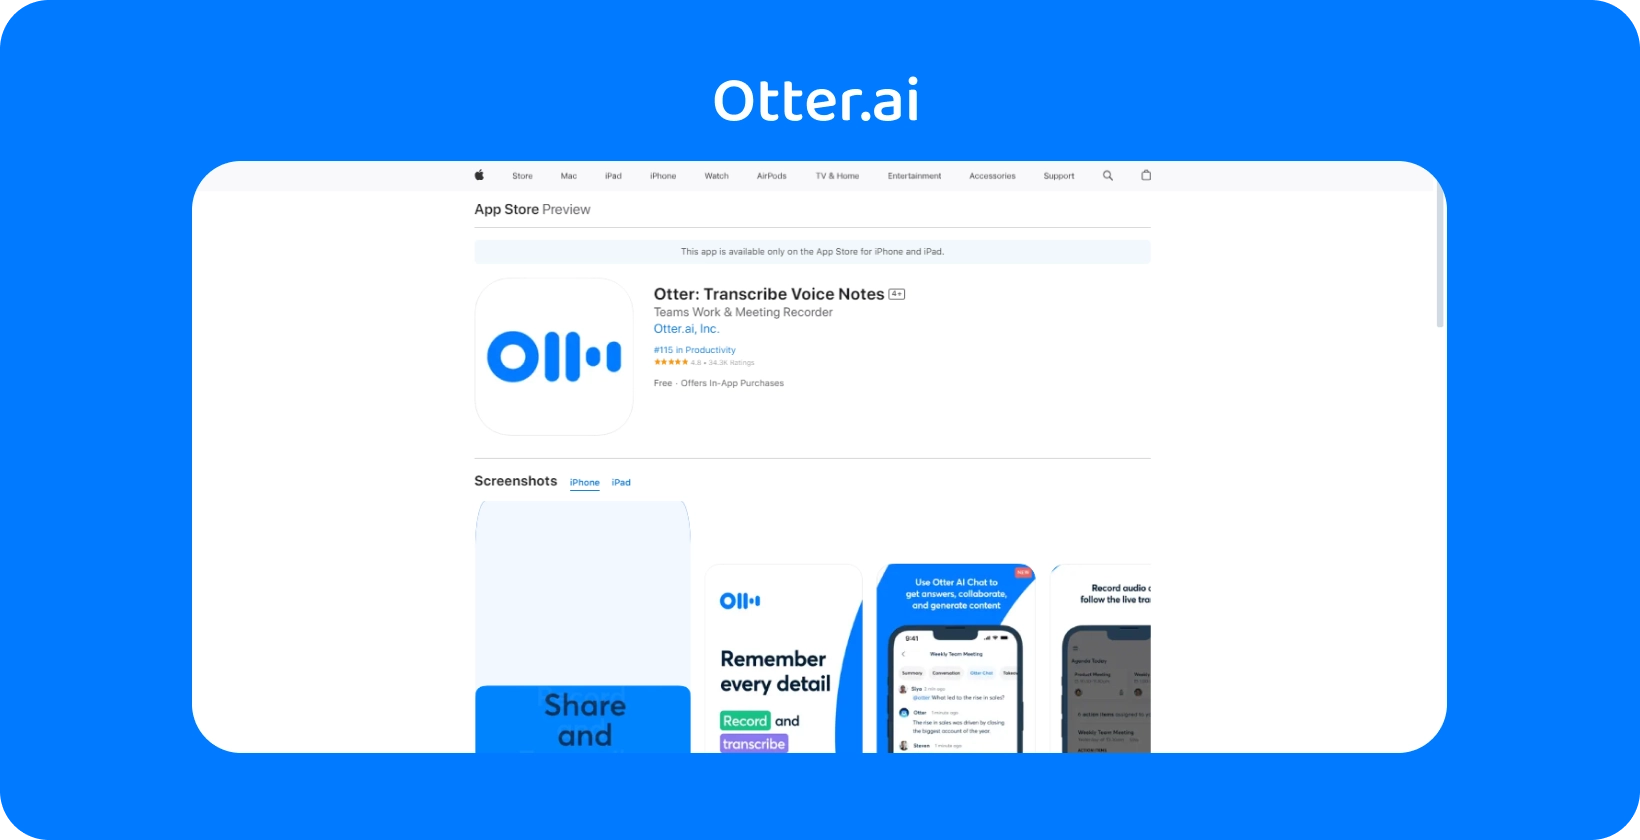 Otter.ai App Store पूर्वावलोकन iPhone पर एप्लिकेशन के ट्रांसक्रिप्शन और वॉयस नोट सुविधाओं को प्रदर्शित करता है।